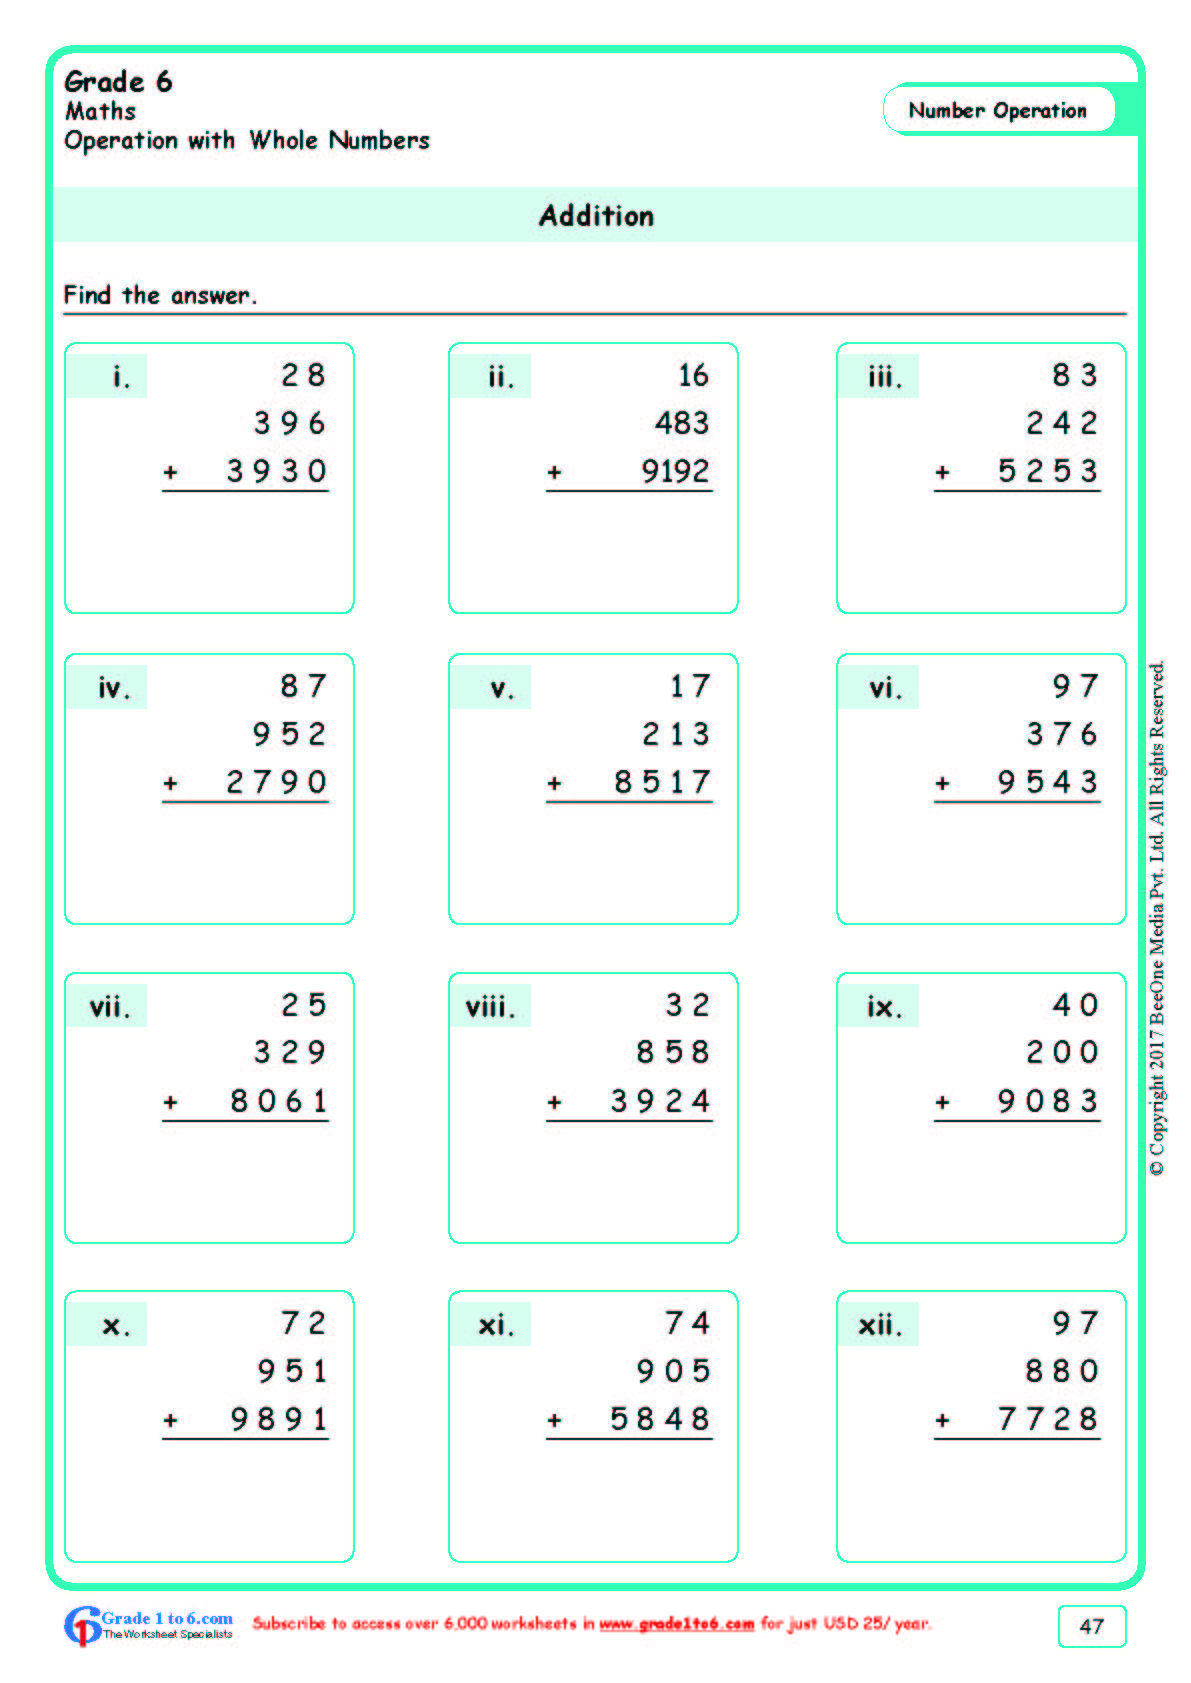 associative property of multiplication worksheets